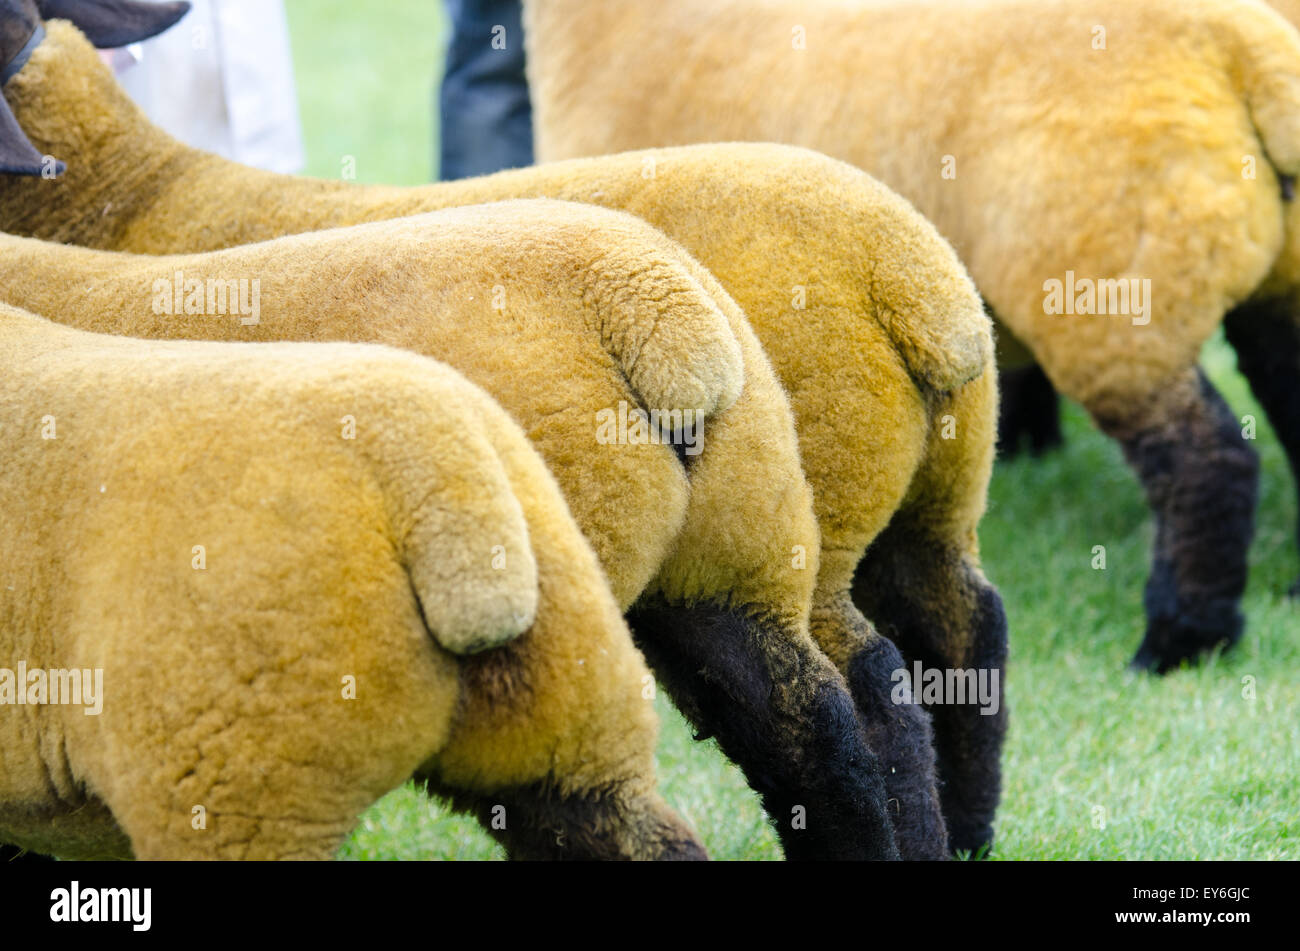 La queue des moutons à l'agriculture dans l'attente de jugement. Banque D'Images